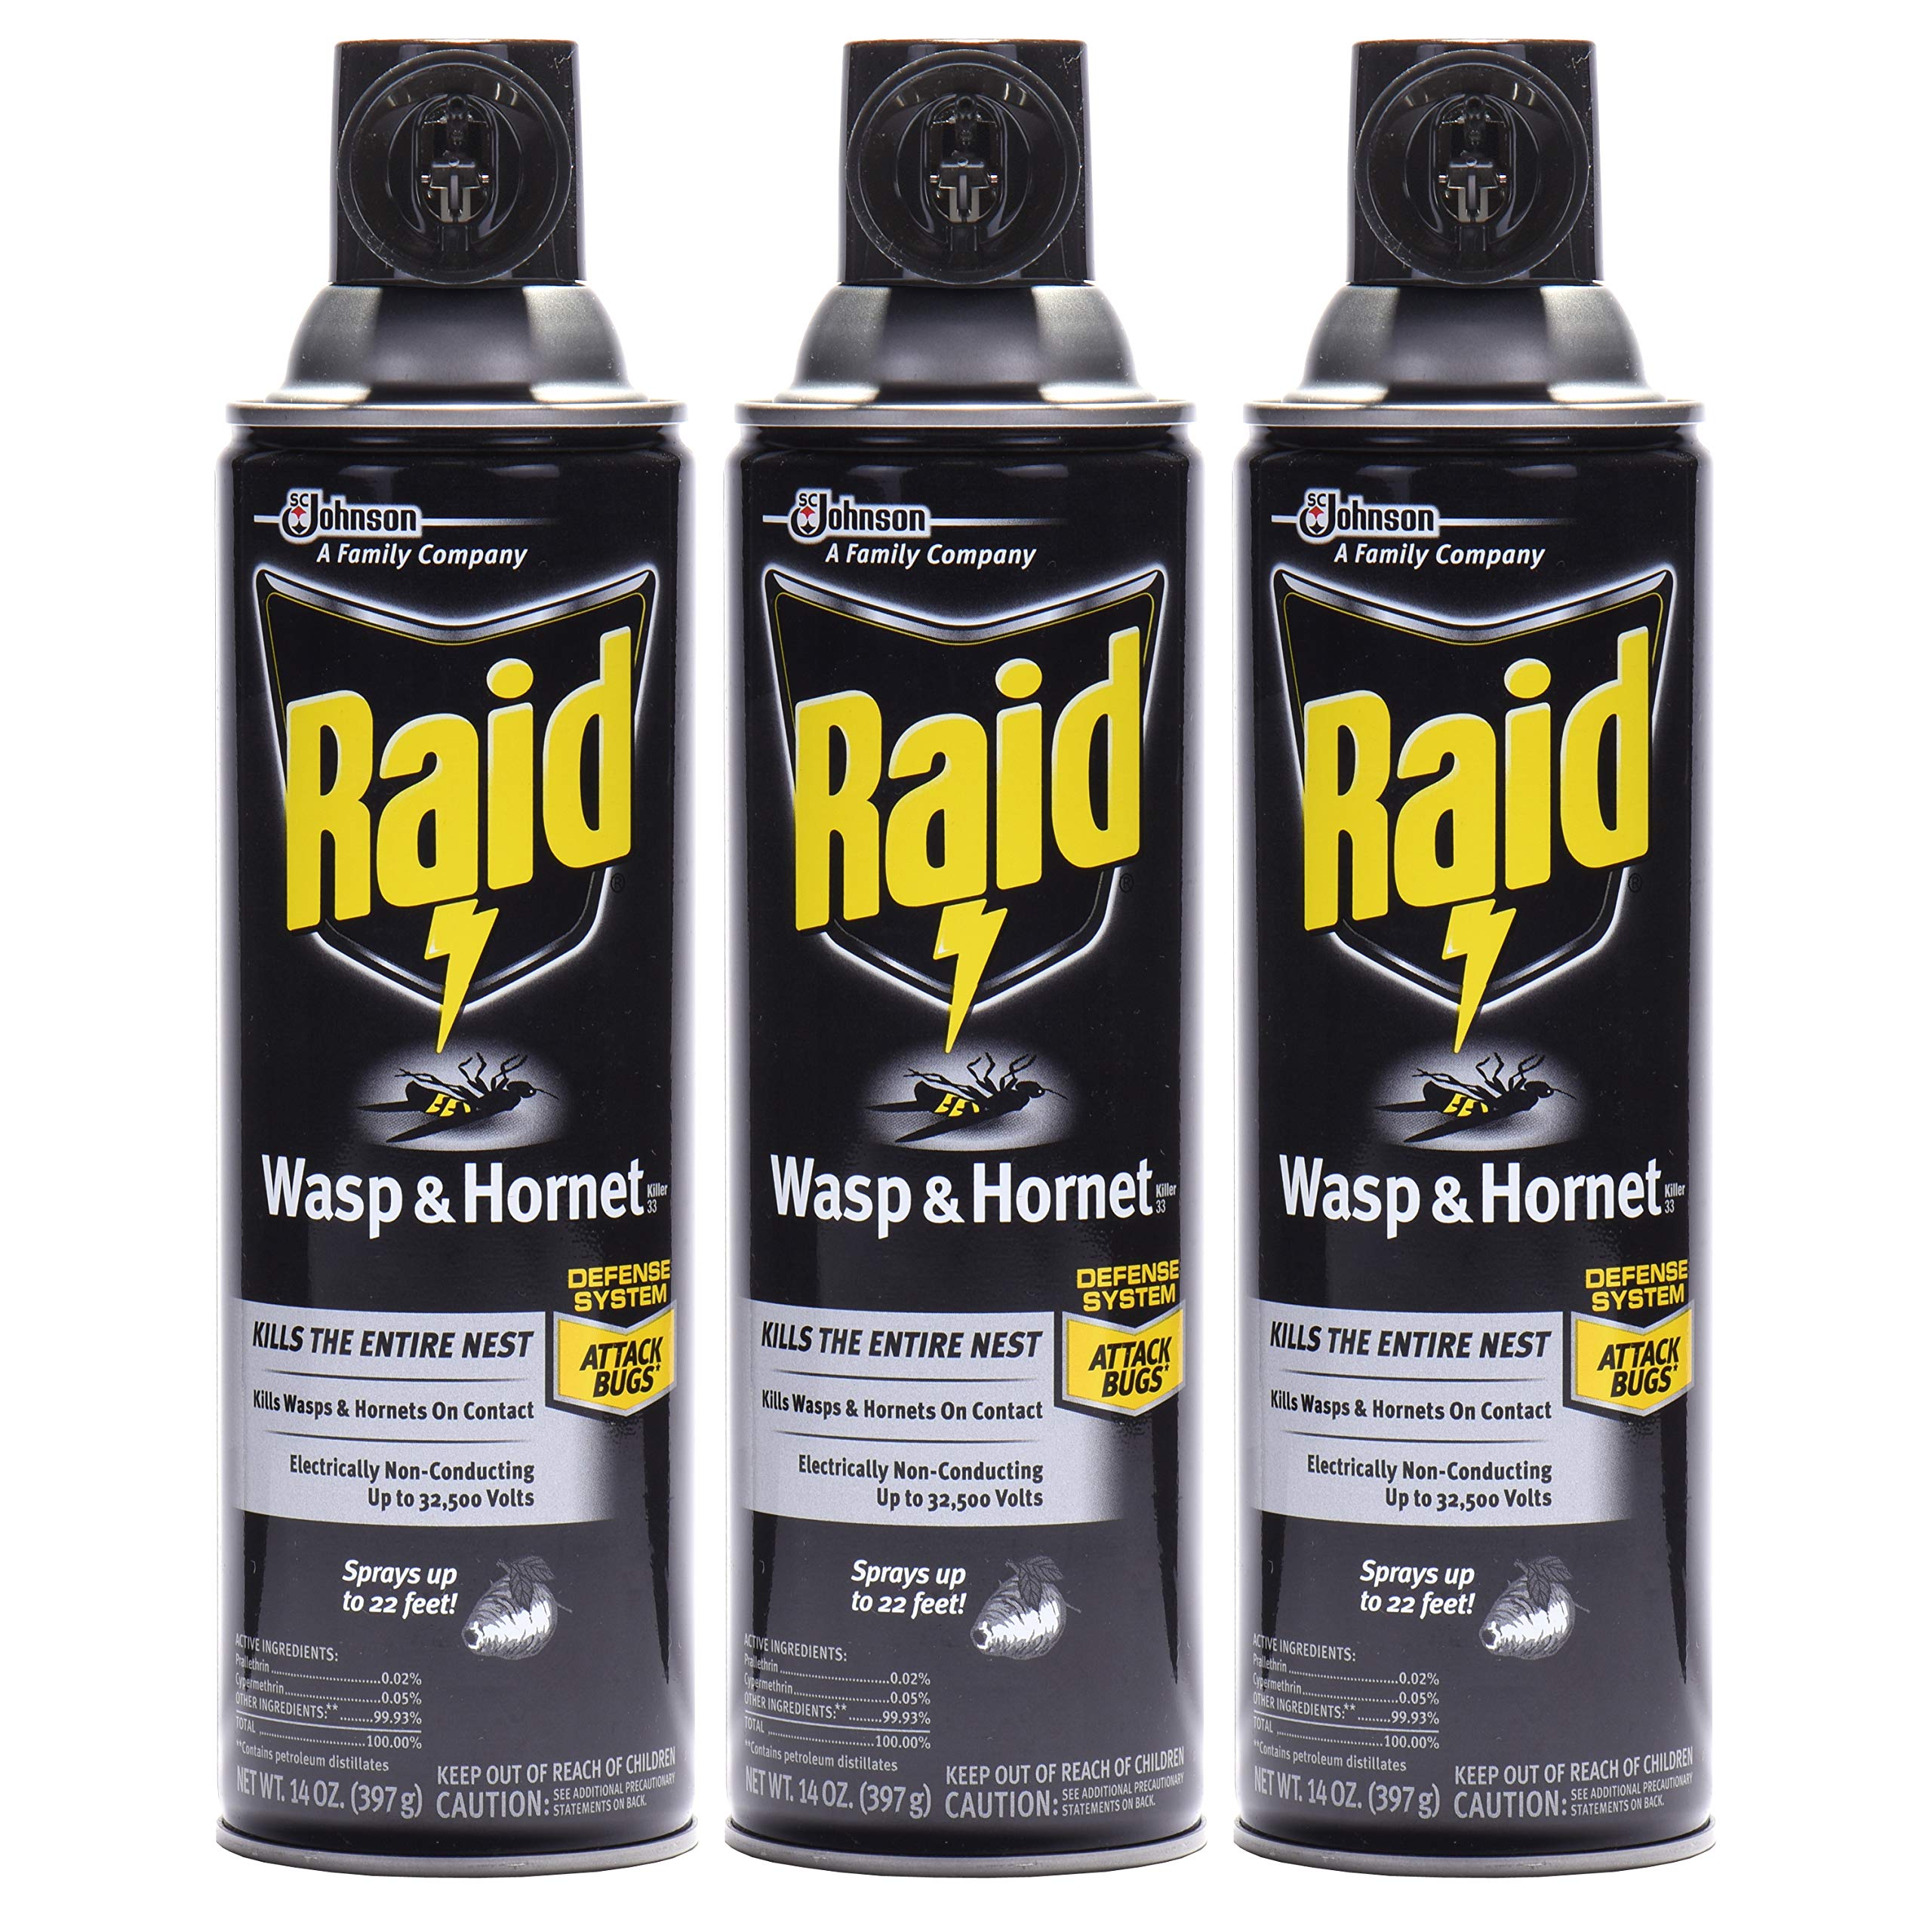 Raid Wasp & Hornet Killer Spray (14 Ounce (Pack of 3)